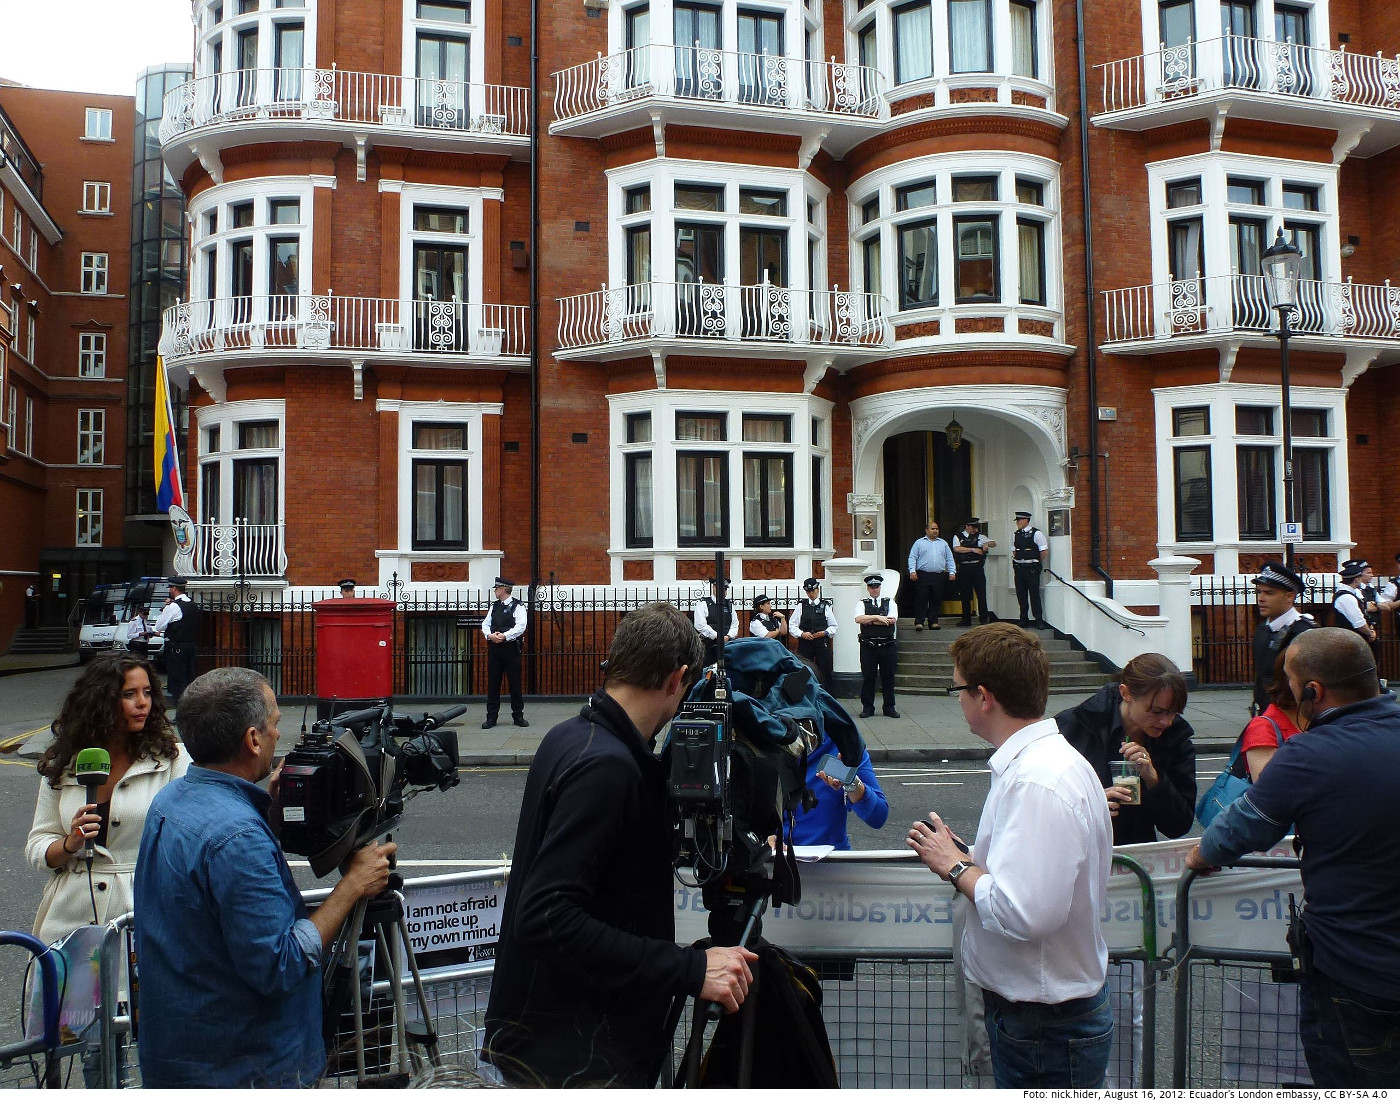 Medienvertreter vor der ecuadorianischen Botschaft in London am 16. August 2012. Foto: nick.hider​​​​​​​, August 16, 2012: Ecuador's London embassy; CC BY-SA 4.0